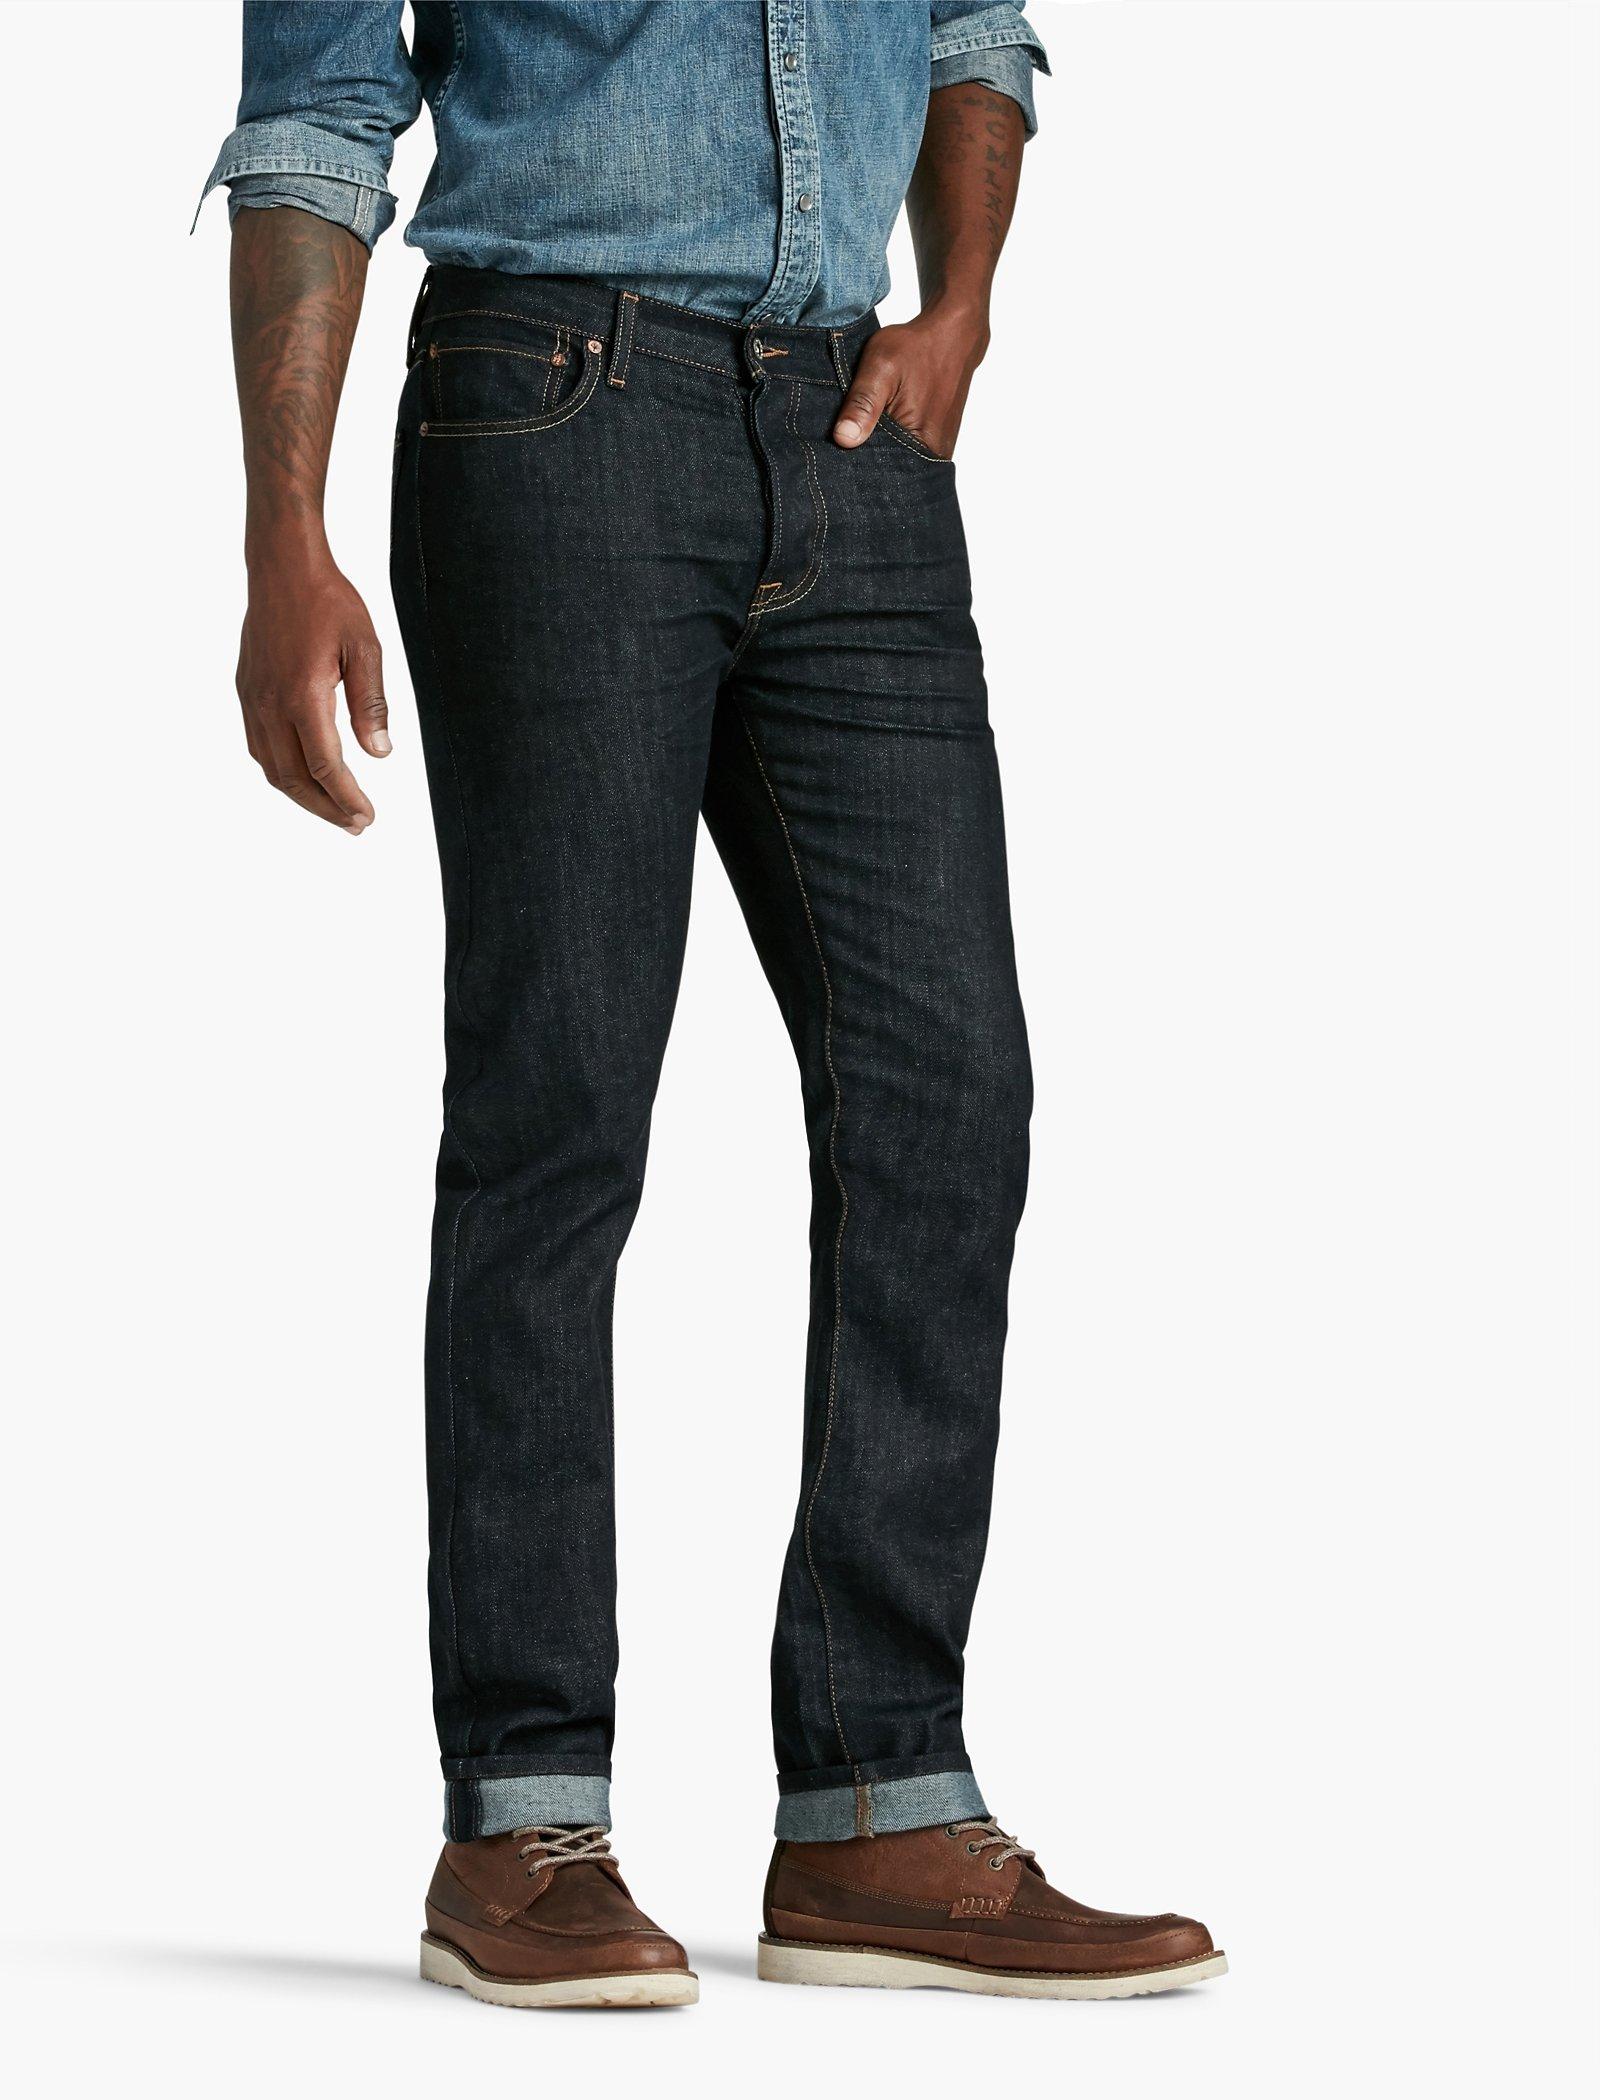 new yorker jeans high waist